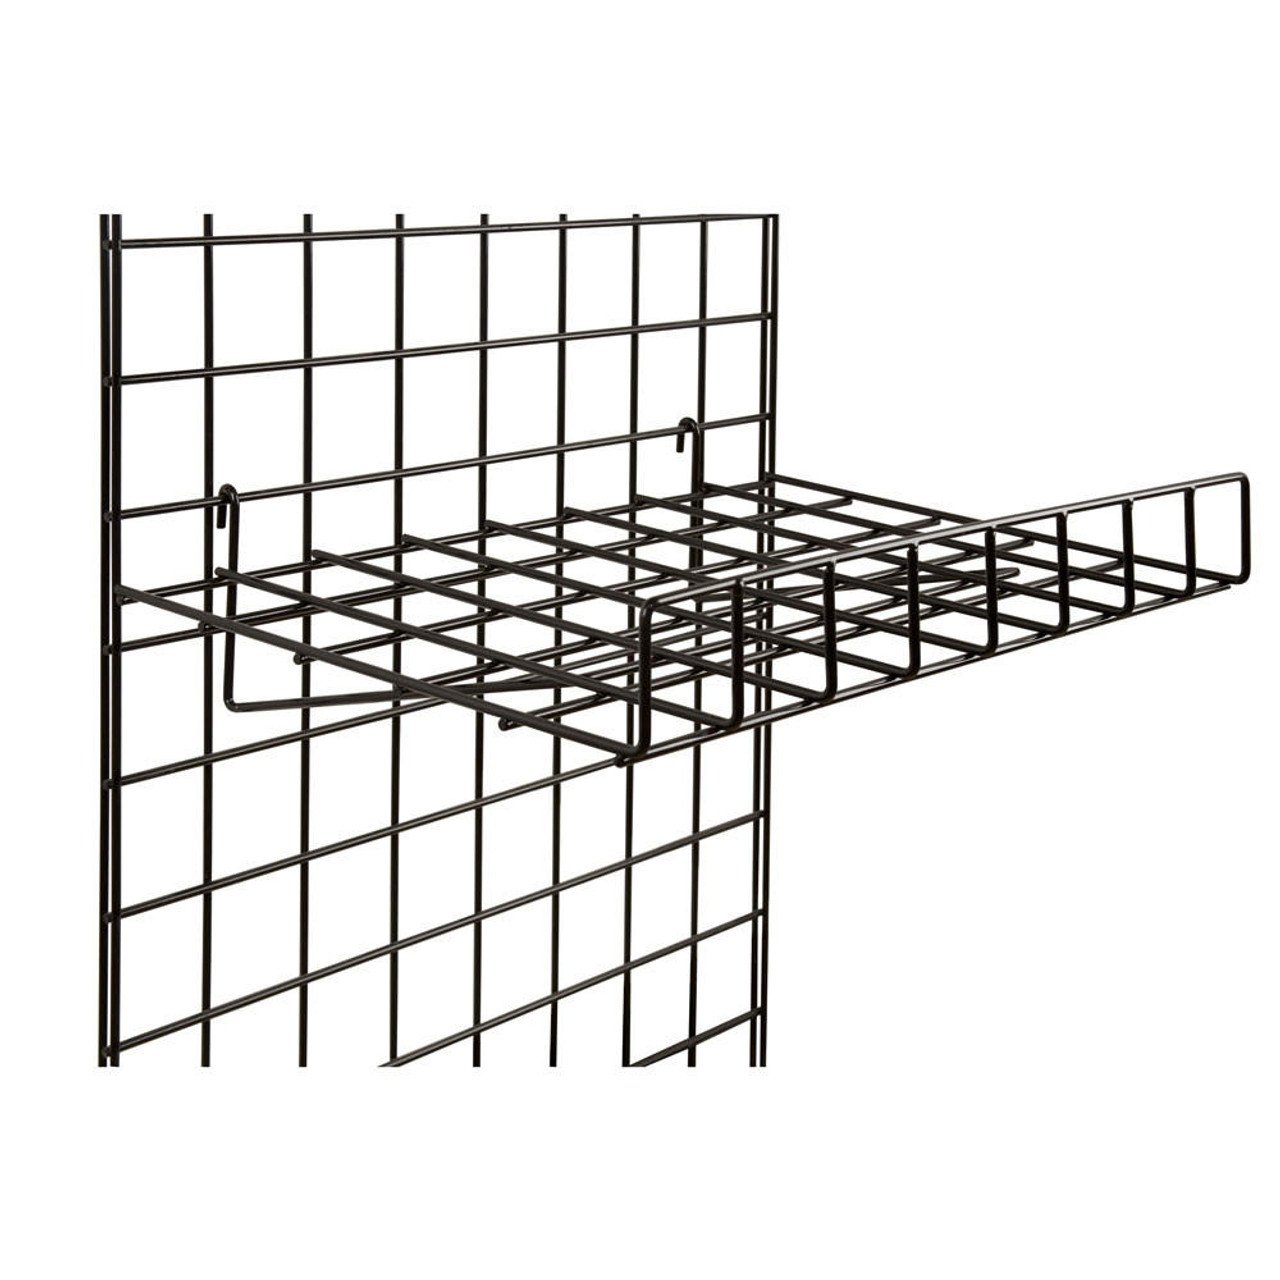 Displays 101 15 x 24 Straight Metal Grid Wall Shelf w/ Front Lip